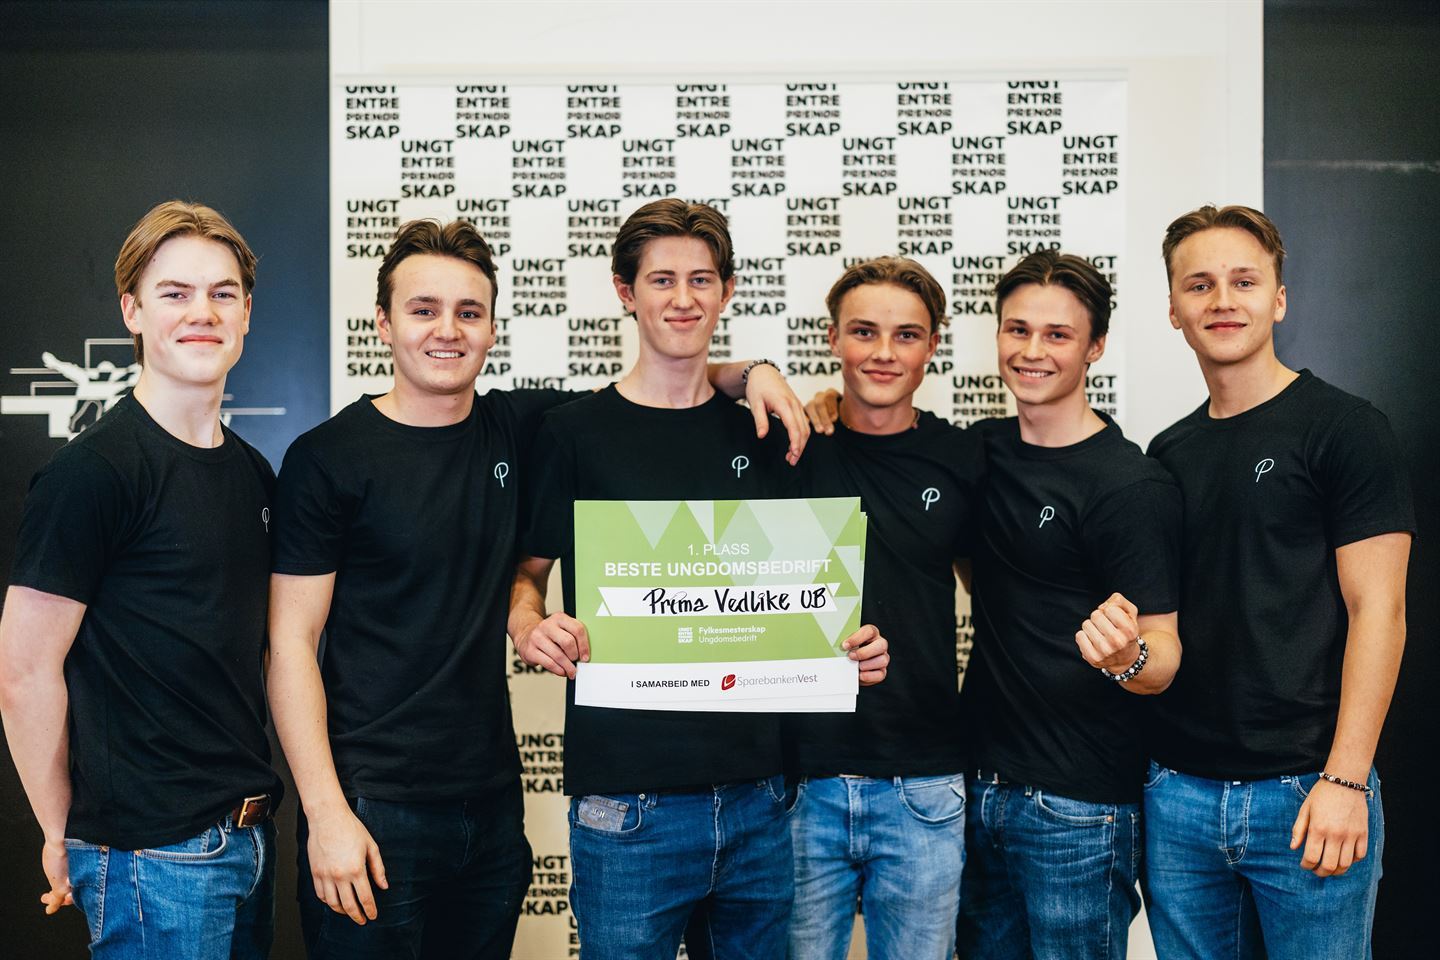 Seks unge gutar som held rundt kvarandre. Guten i midten held ein grøn plakat med teksten "1. plass Beste ungdomsbedrift". 